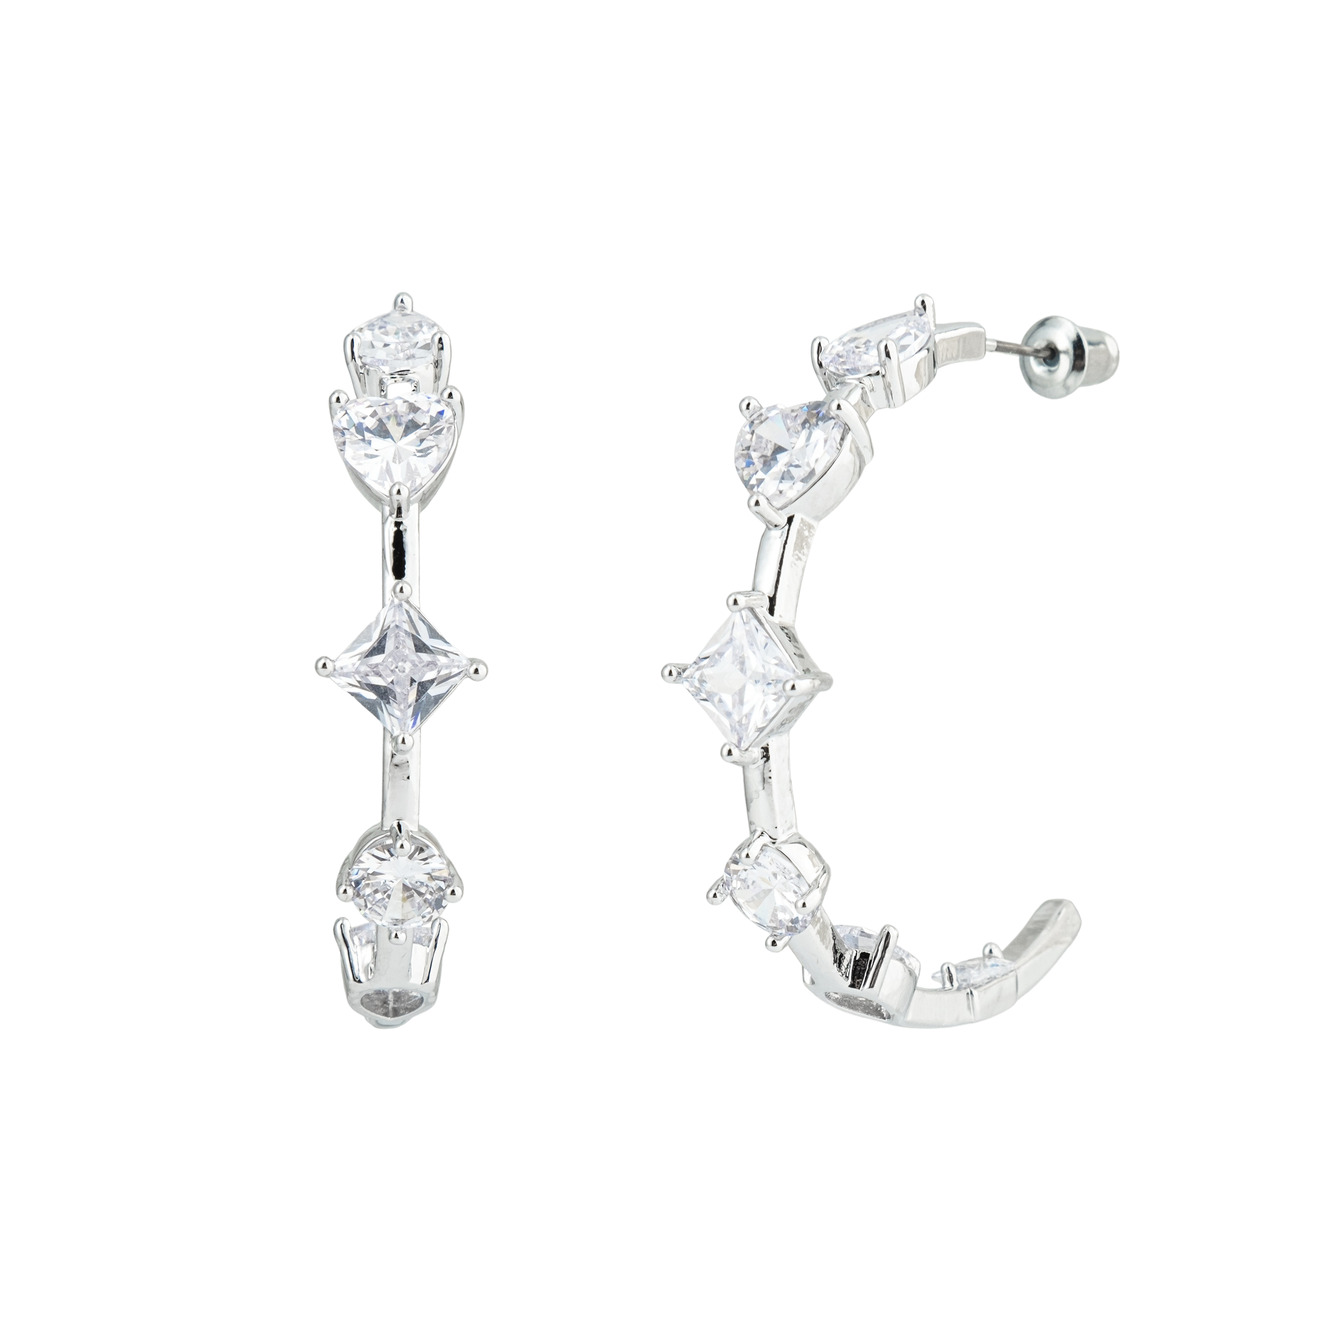 Herald Percy Серебристые серьги-кольца с кристаллами в форме сердца и звезд фотографии